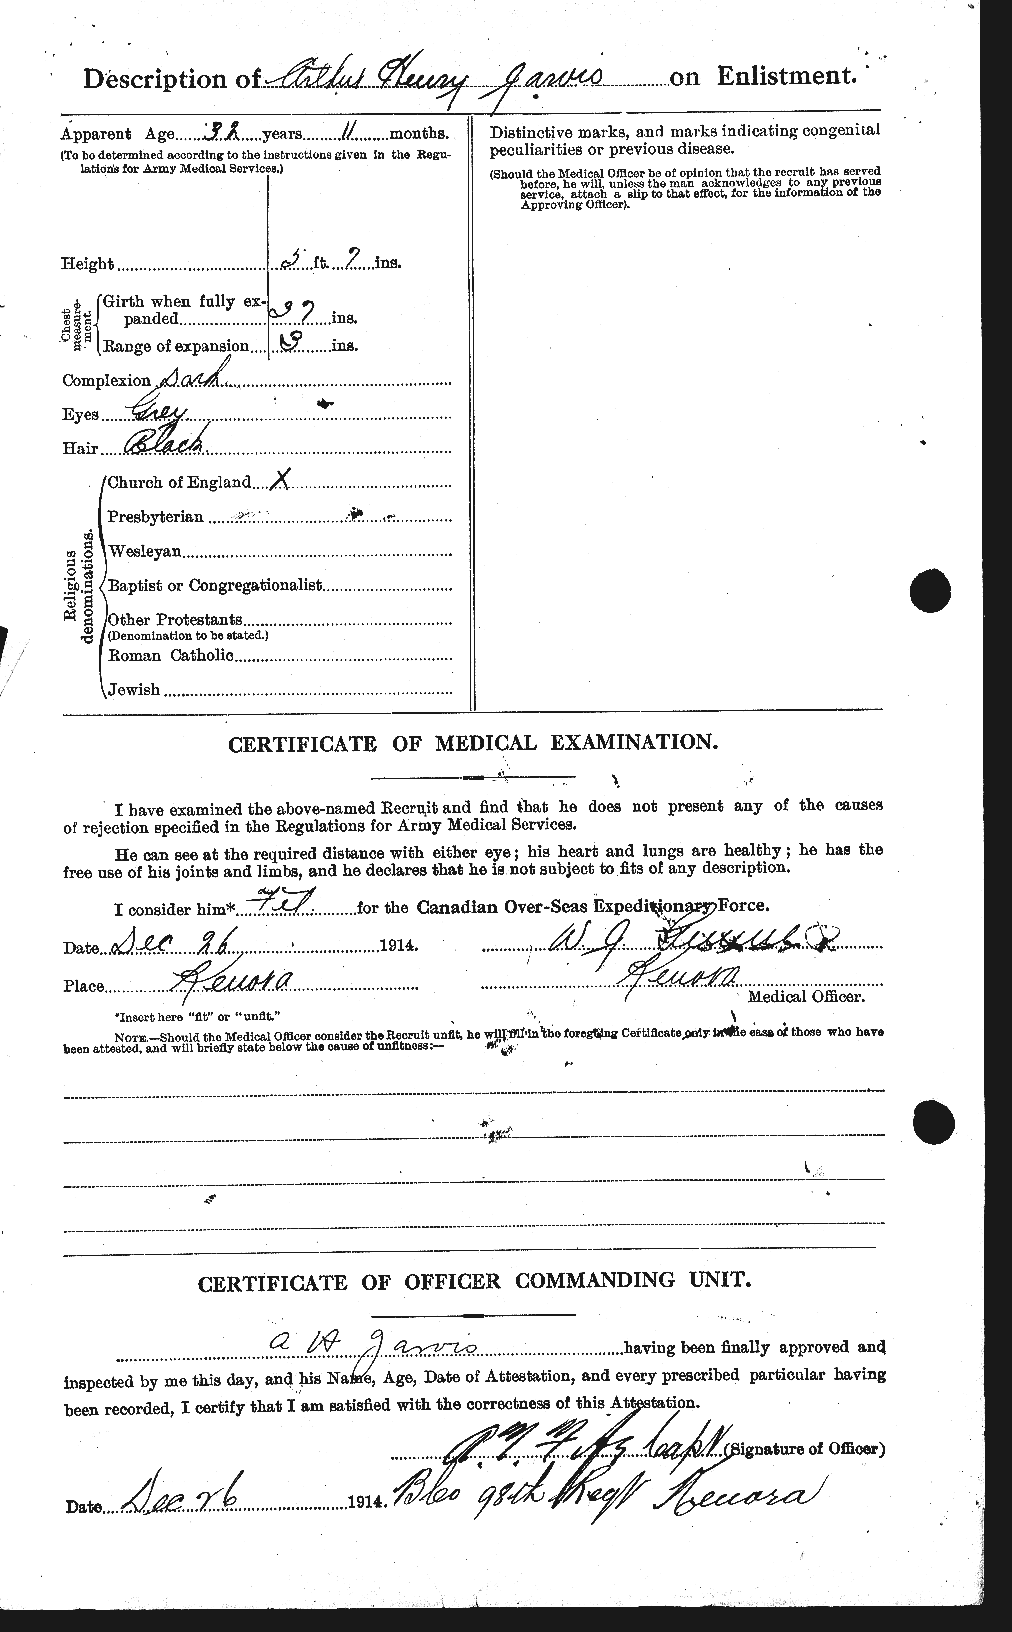 Dossiers du Personnel de la Première Guerre mondiale - CEC 414642b